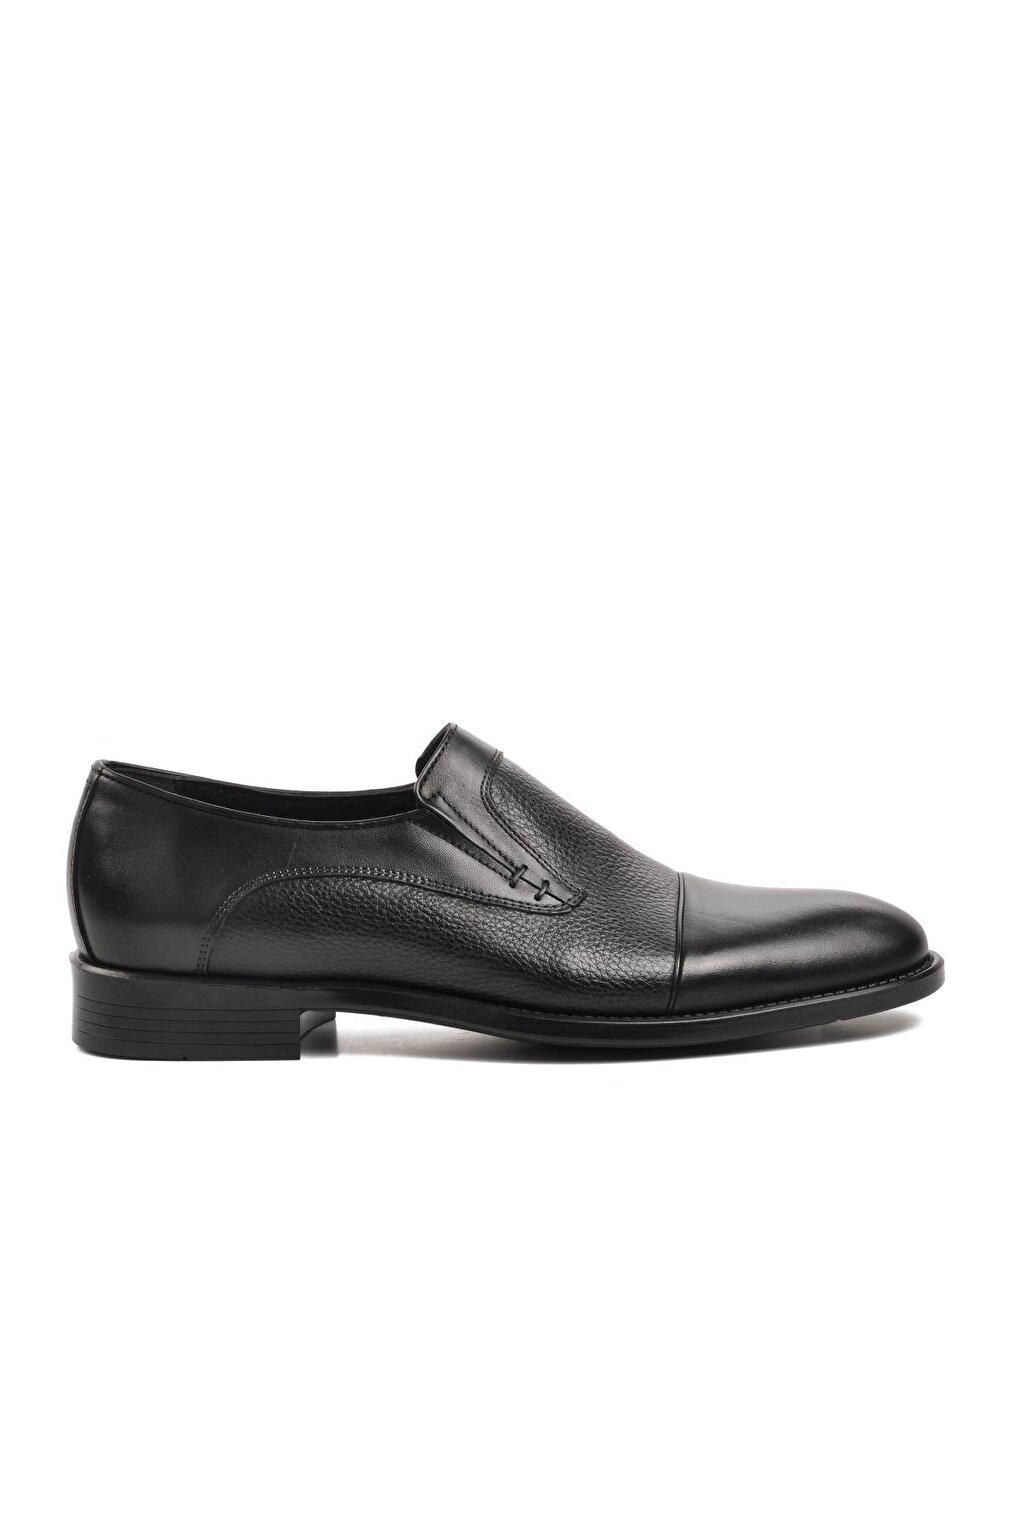 Черные мужские классические туфли из натуральной кожи 9349 Ayakmod